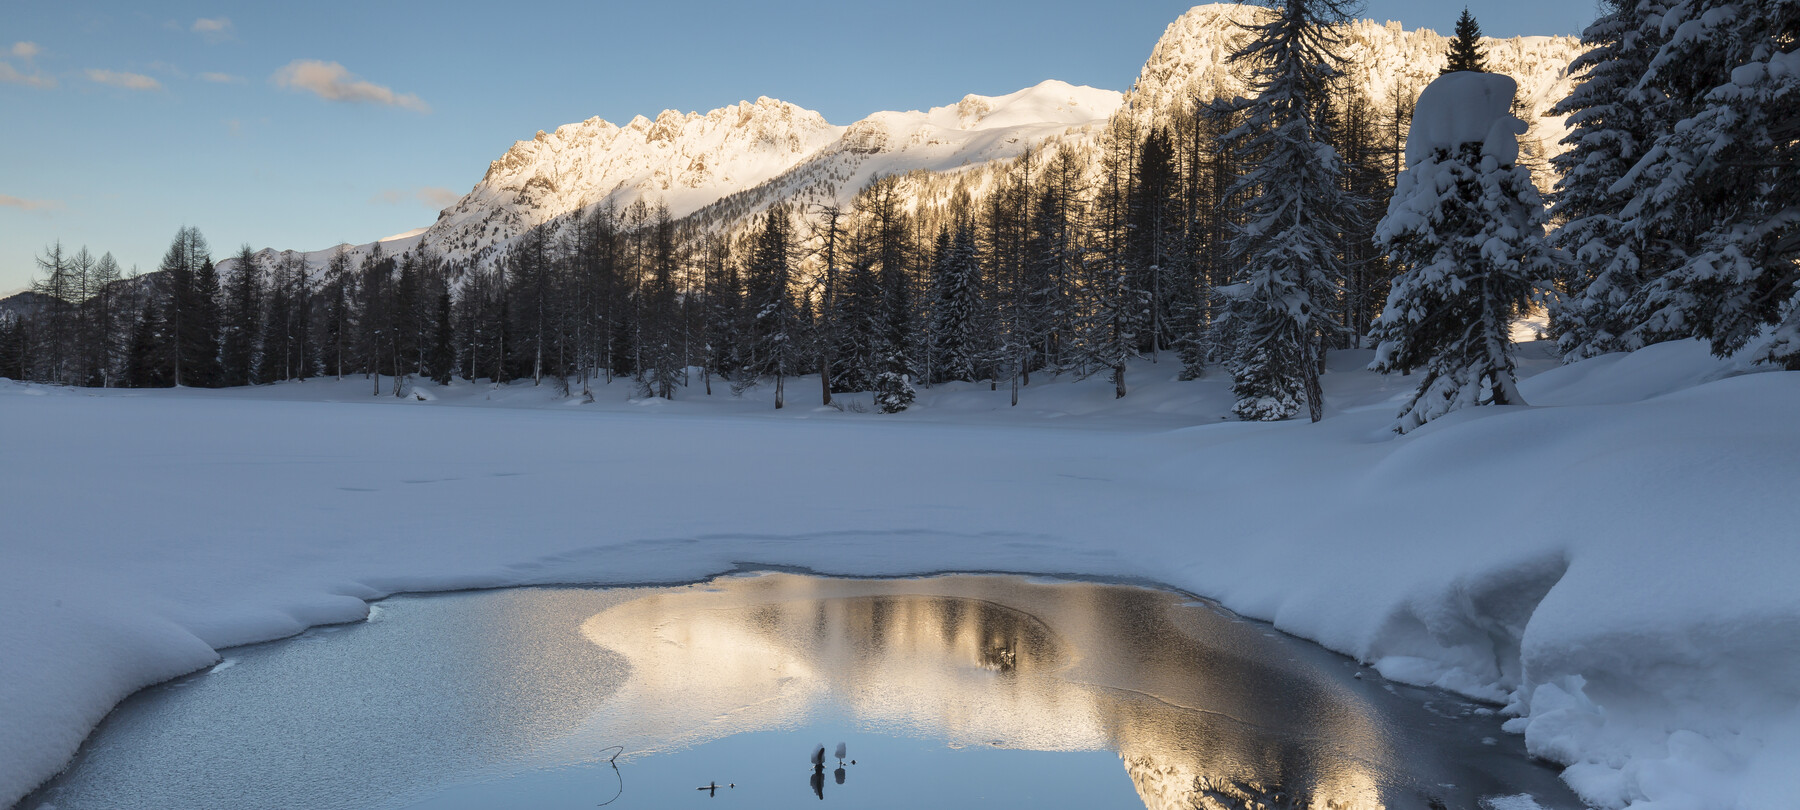 Wie überleben Tiere in gefrorenen Seen?